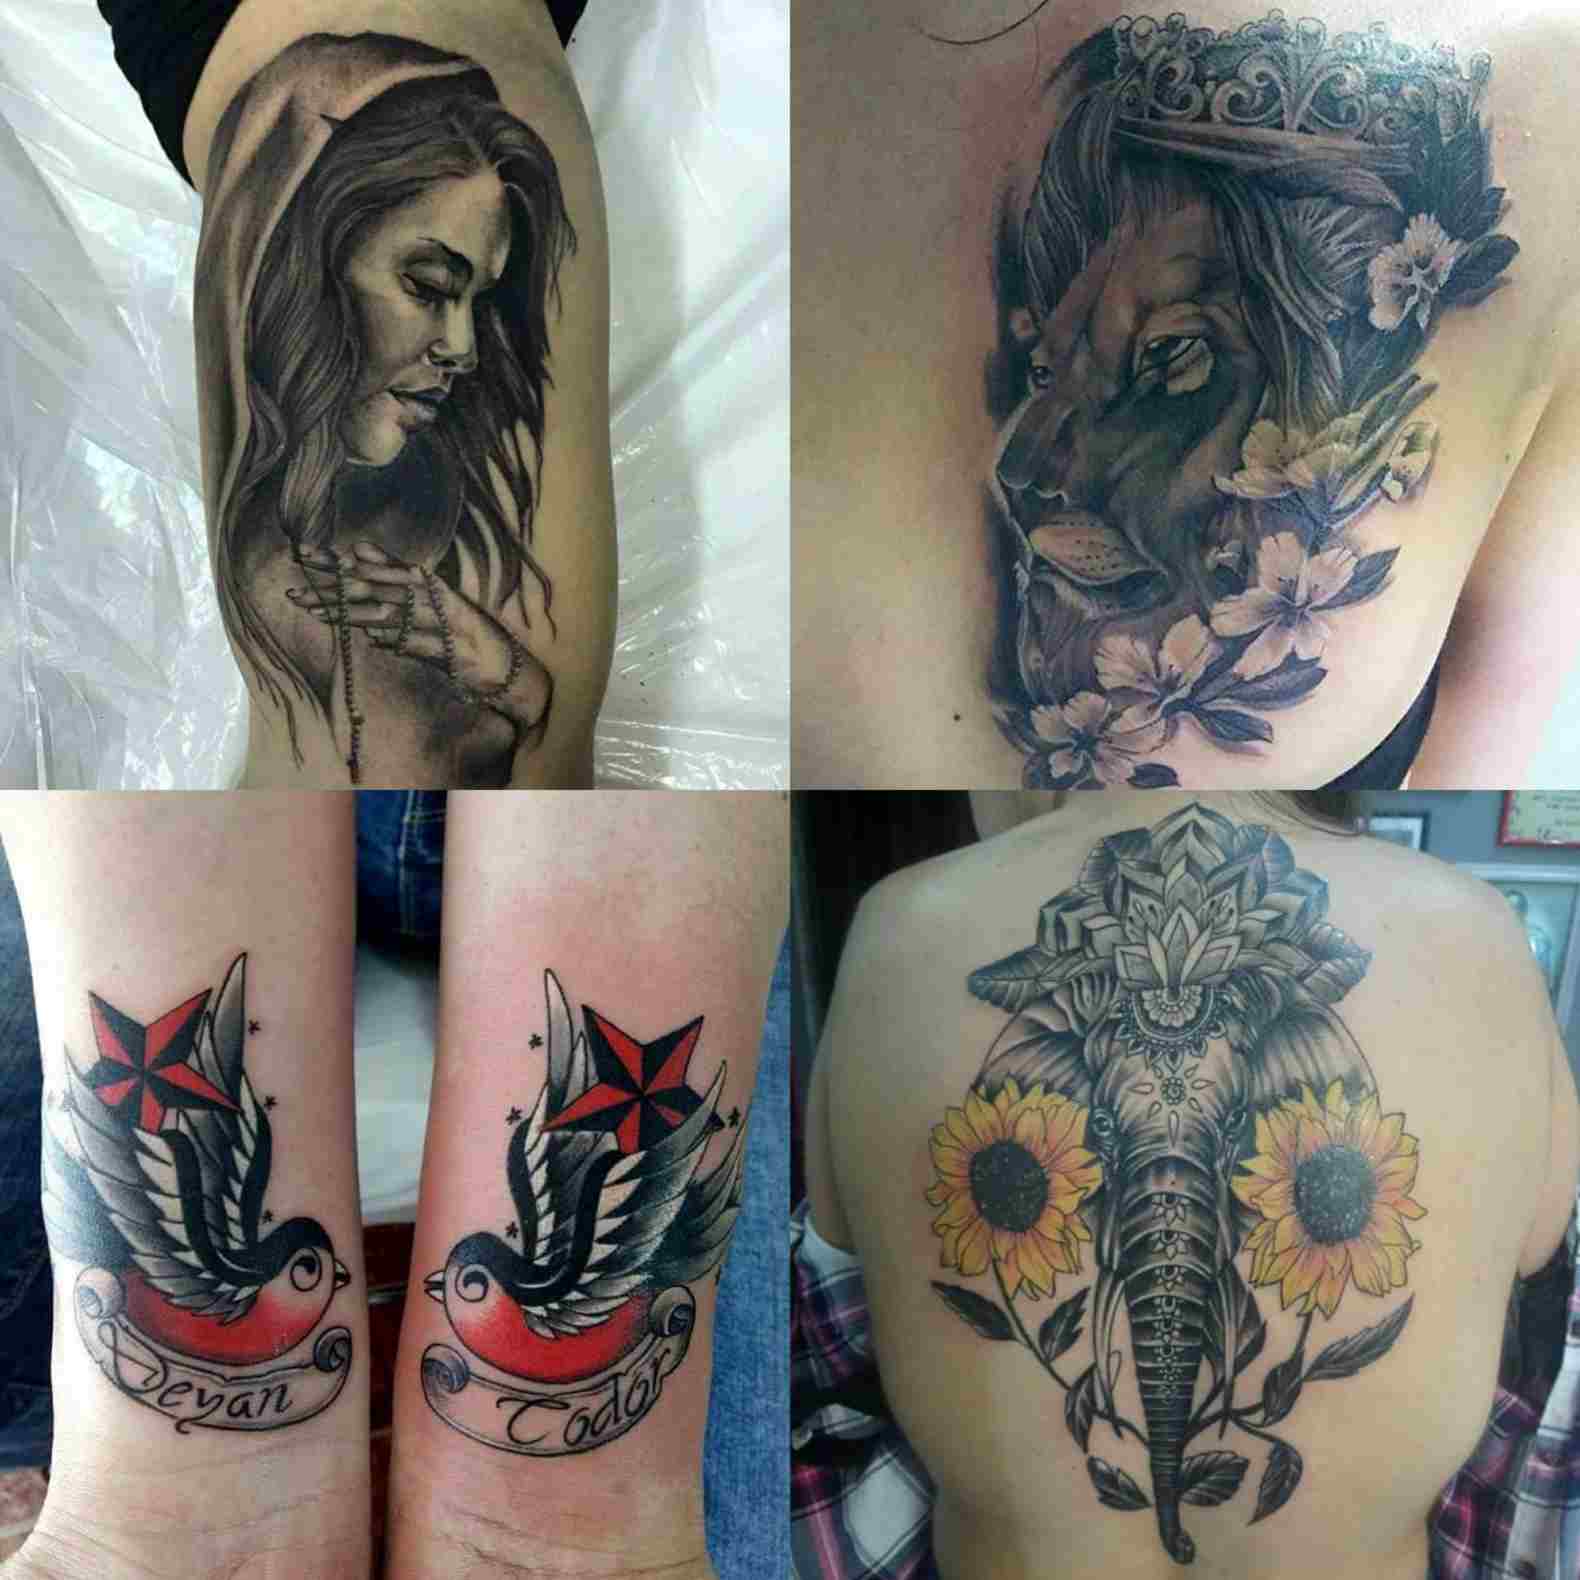 Tattoo design elephants wrist tattoo tattoo pain tattooing in back pain